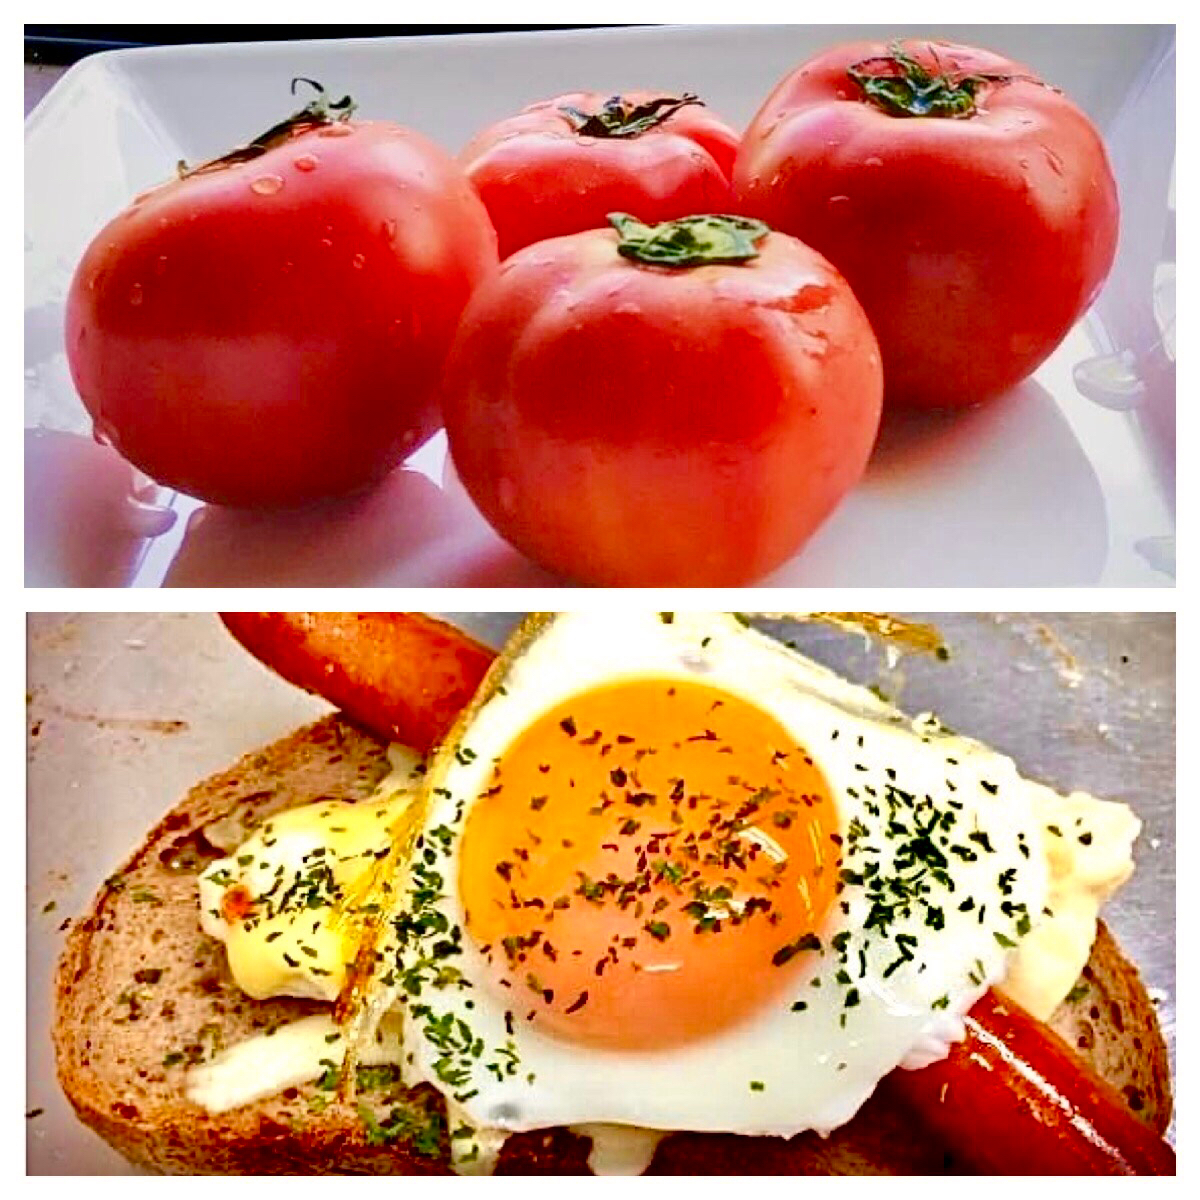 オープンサンド&トマト2個で朝ごはん・・